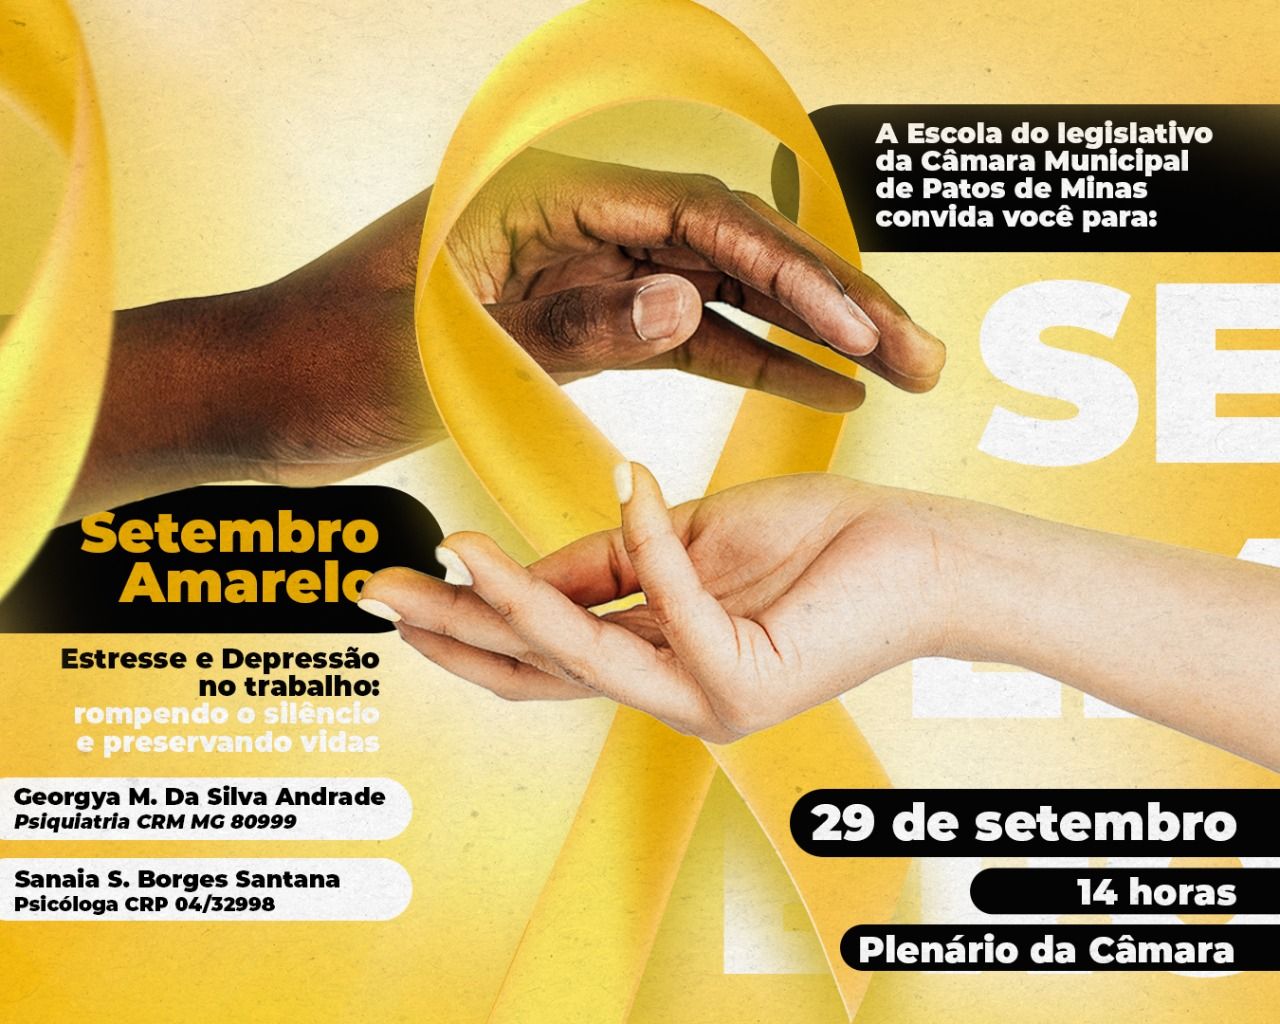 Escola do Legislativo da Câmara Municipal convida população para evento sobre a prevenção do suicídio